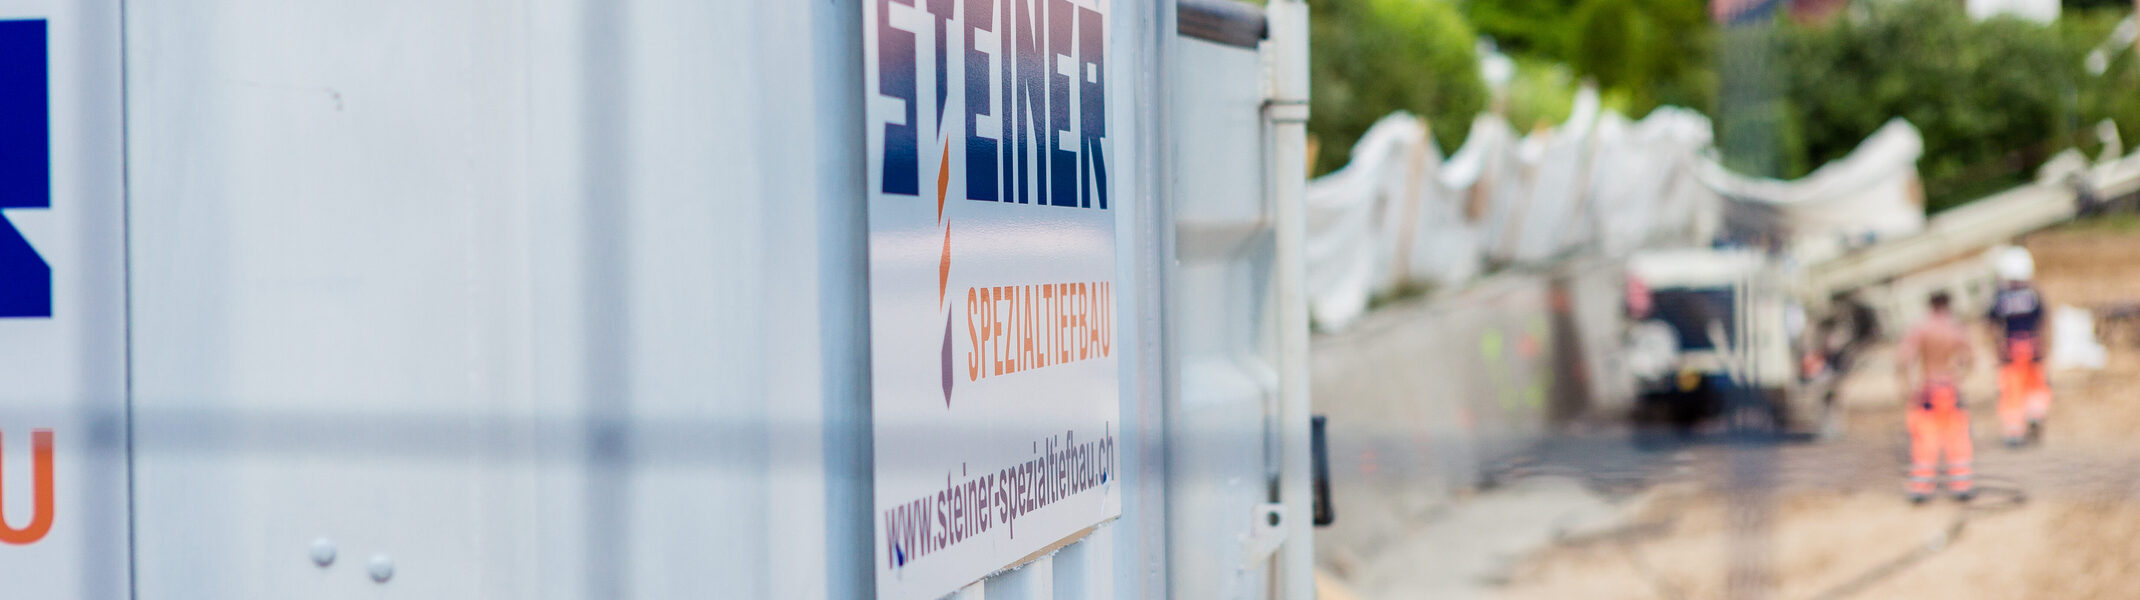 Steiner AG Spezialtiefbau Ihr Partner im Bereich Baugrubensicherung ​​​​​​​und Fundationen